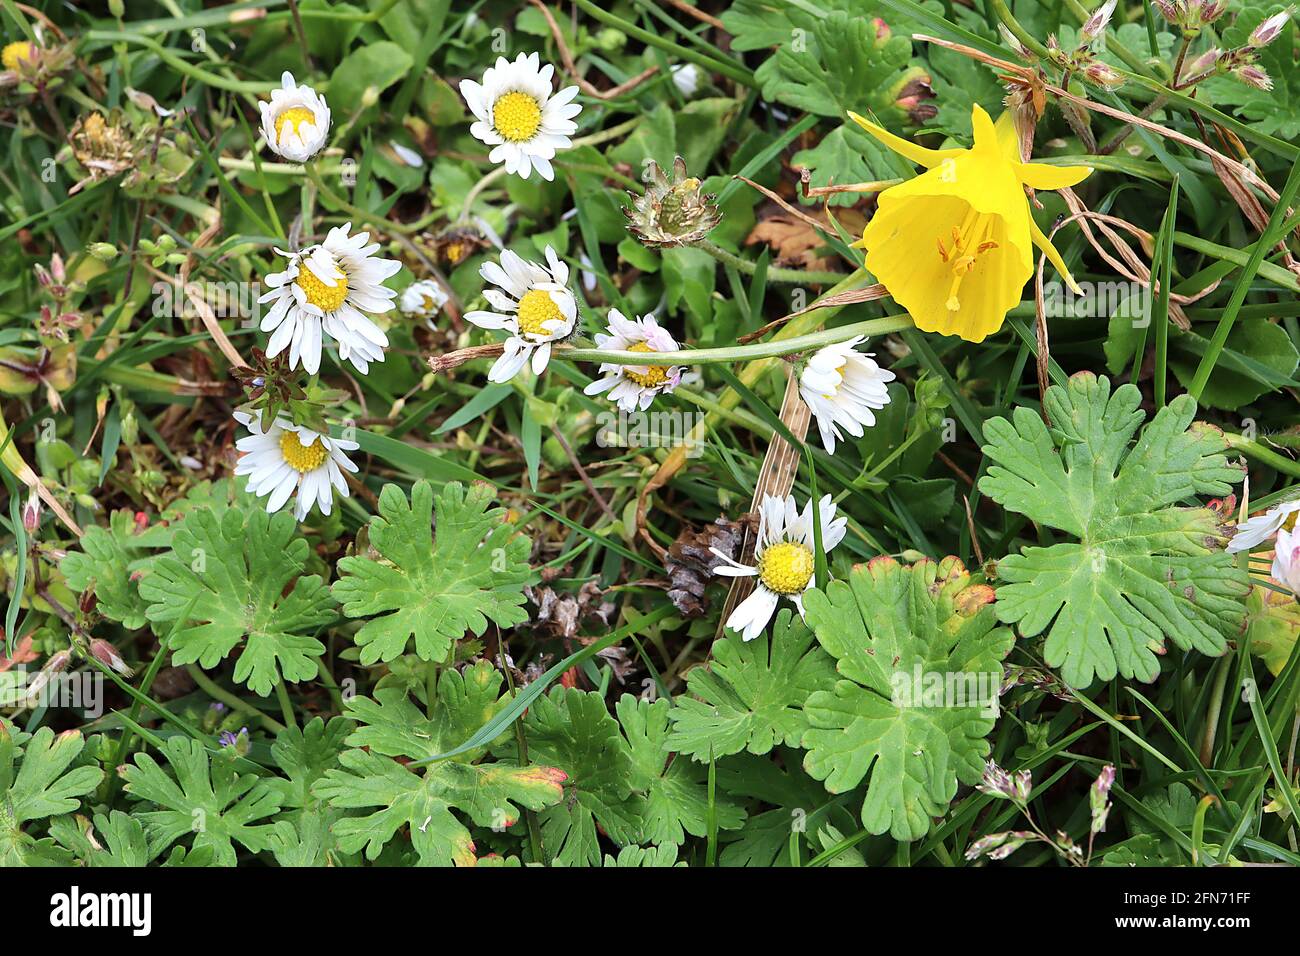 Narcissus bulbocodium Division 13 Nome botanico hoop petticoat daffodil – piccoli narcisi gialli con piccoli petali e grandi trombe, maggio, Inghilterra, Foto Stock